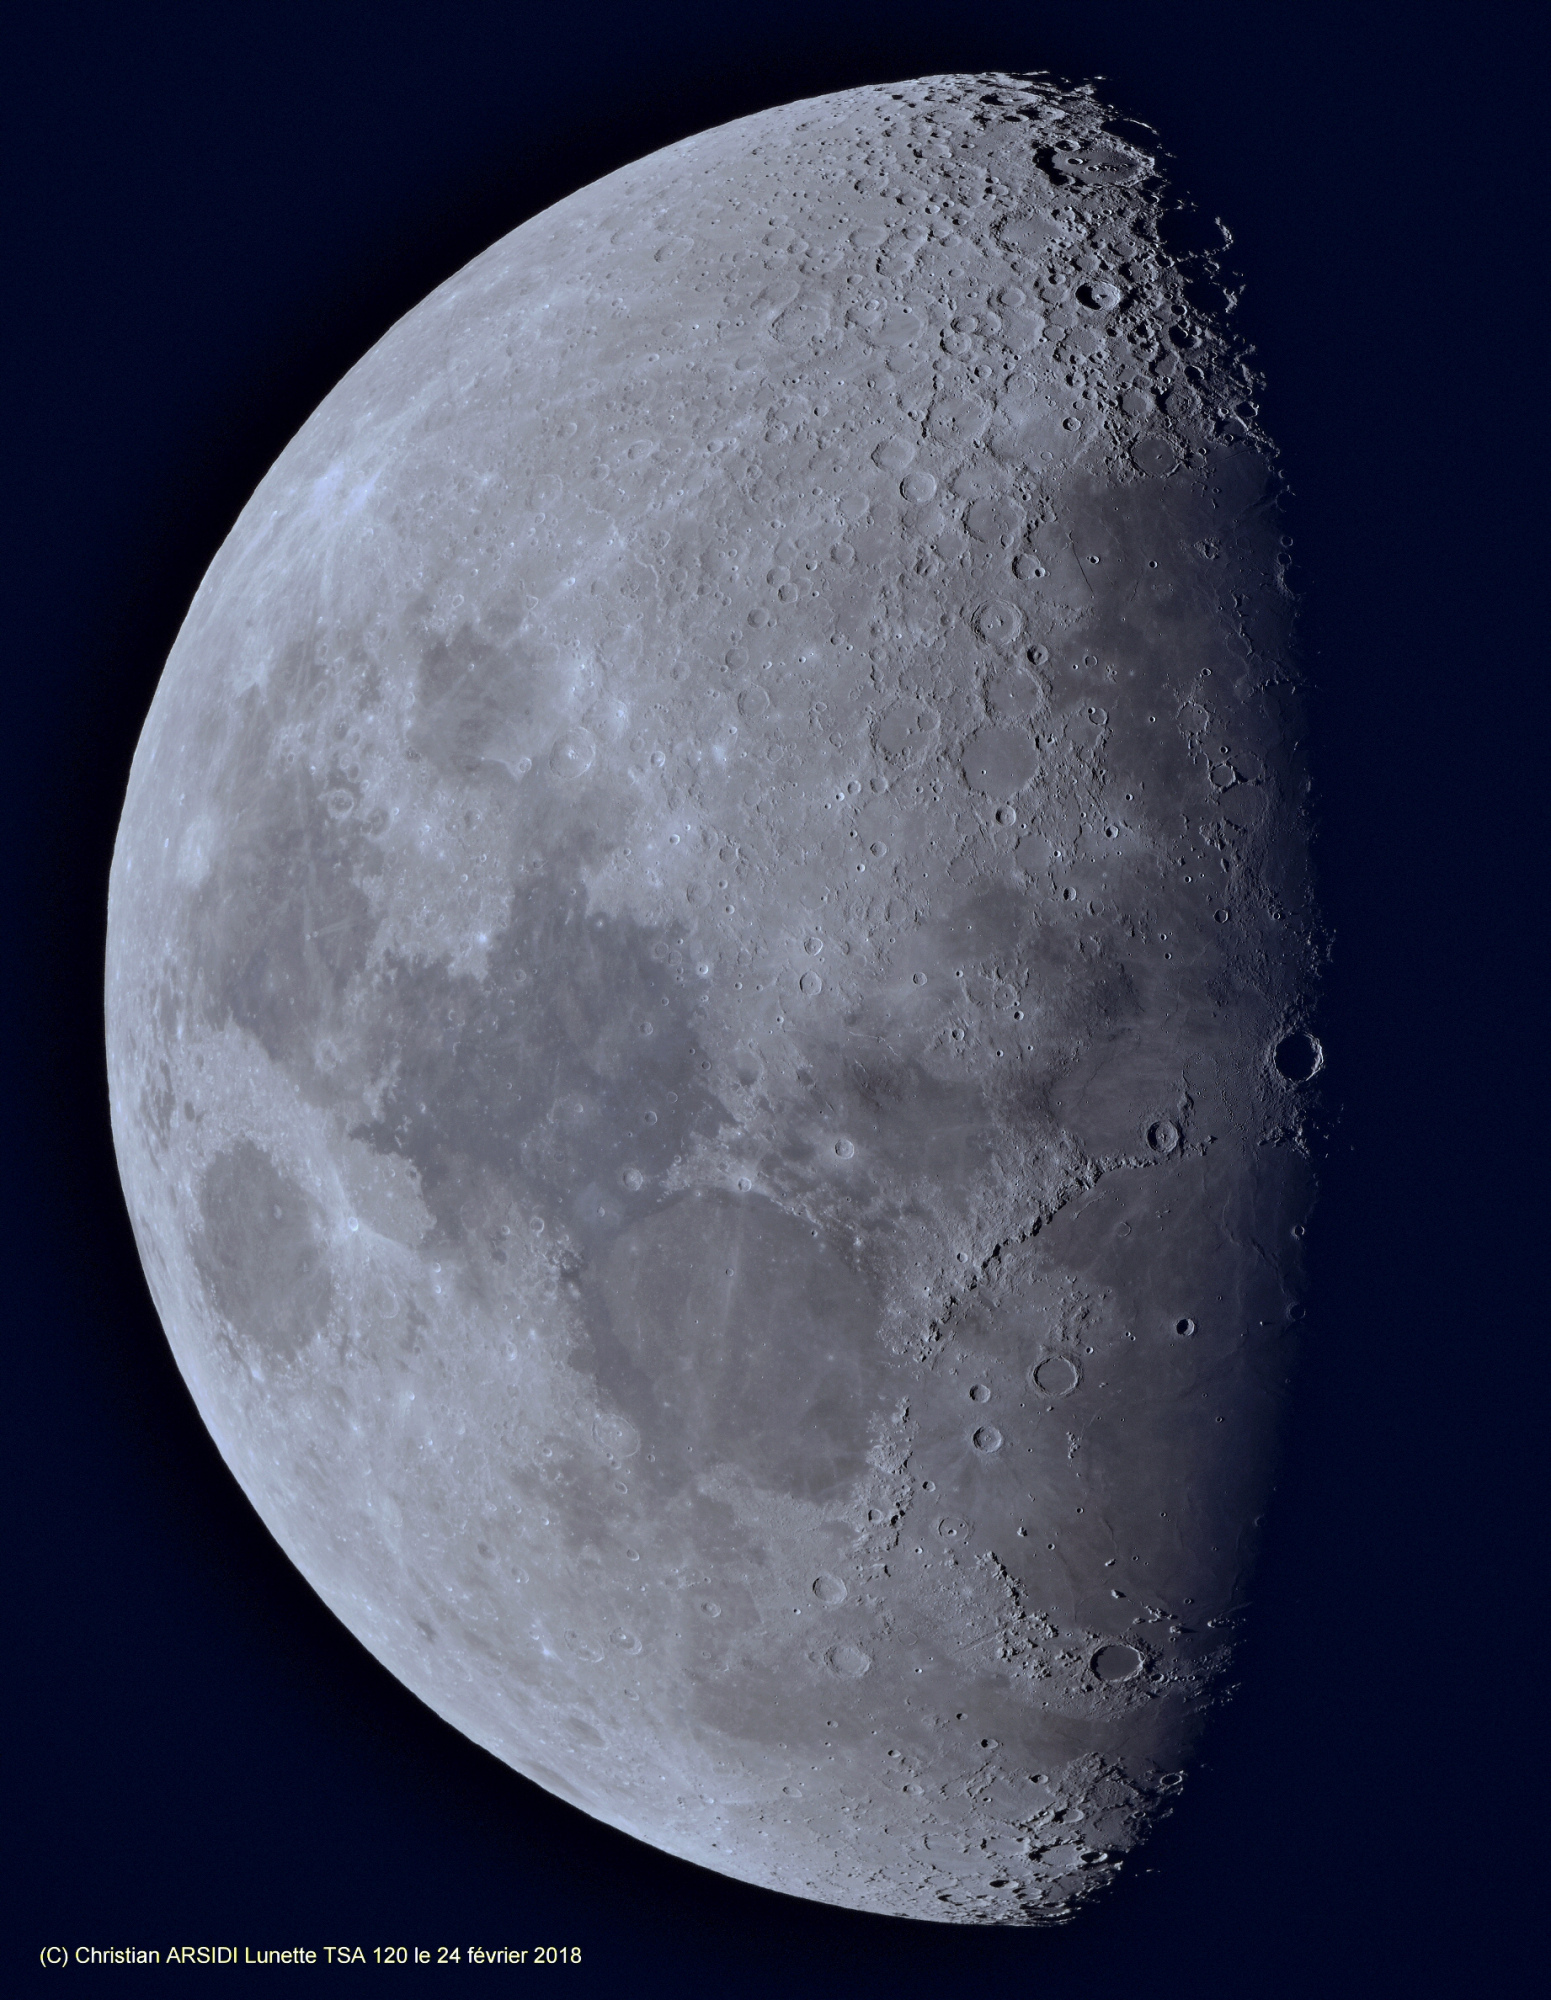 La Lune 35 images RVB 35 images TTB 1 recadrée_DxO 40% BV.jpg